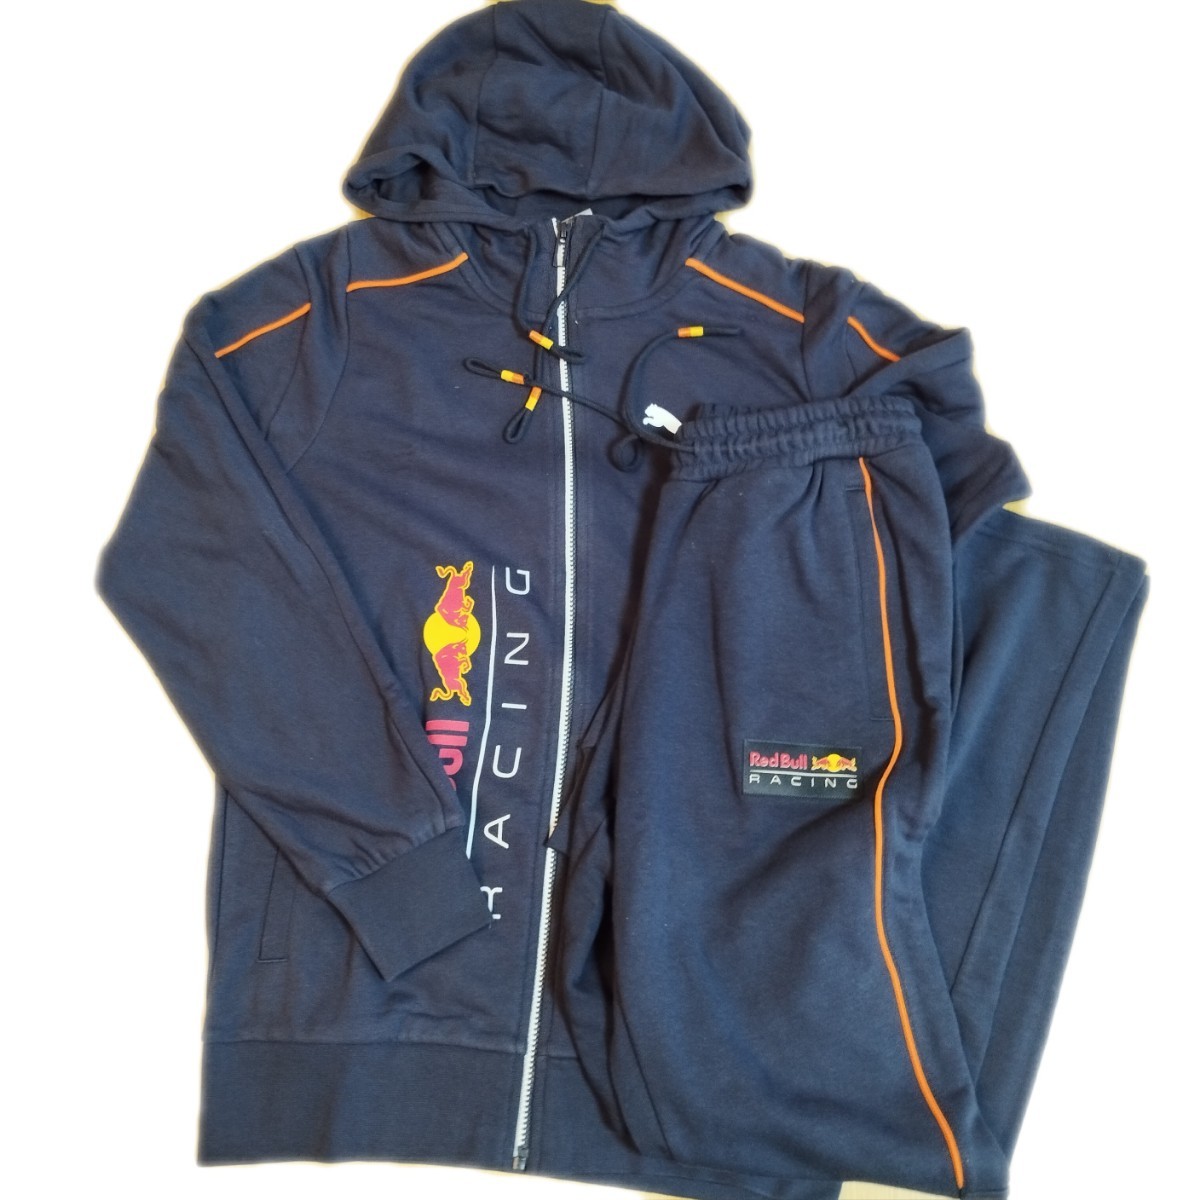  Puma Red Bull RBR MT7f-ti full Zip jacket & pants [534999/535001 (S) regular price 23100 jpy ]